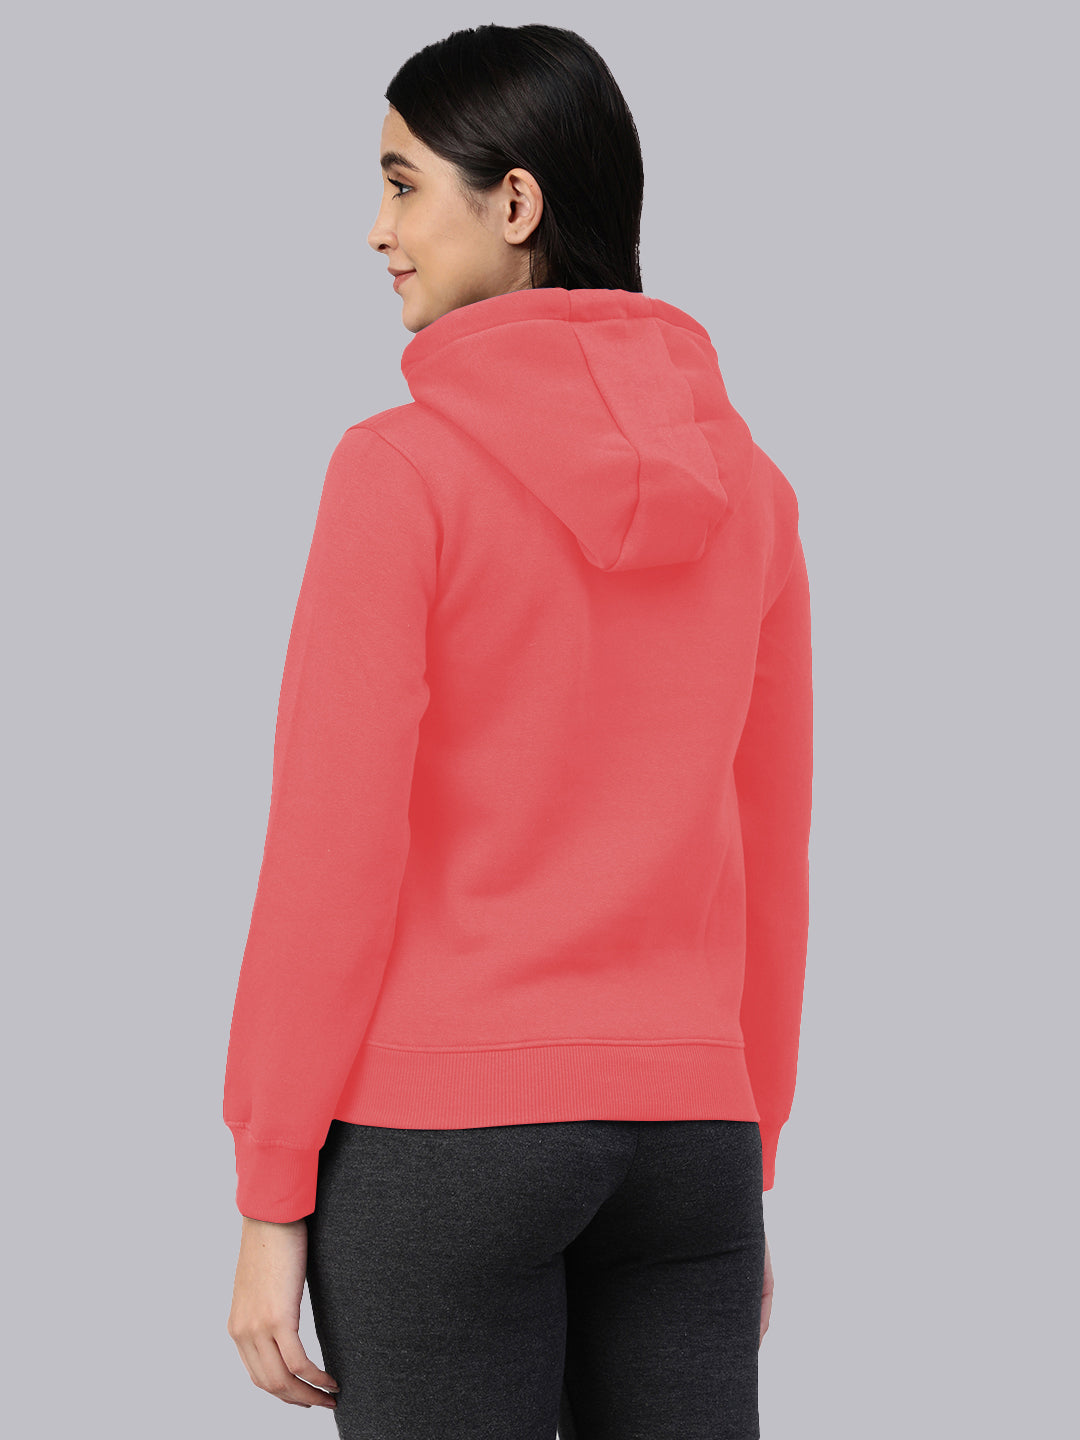 Pink Printed Round Neck Hoodie Sweatshirt #455